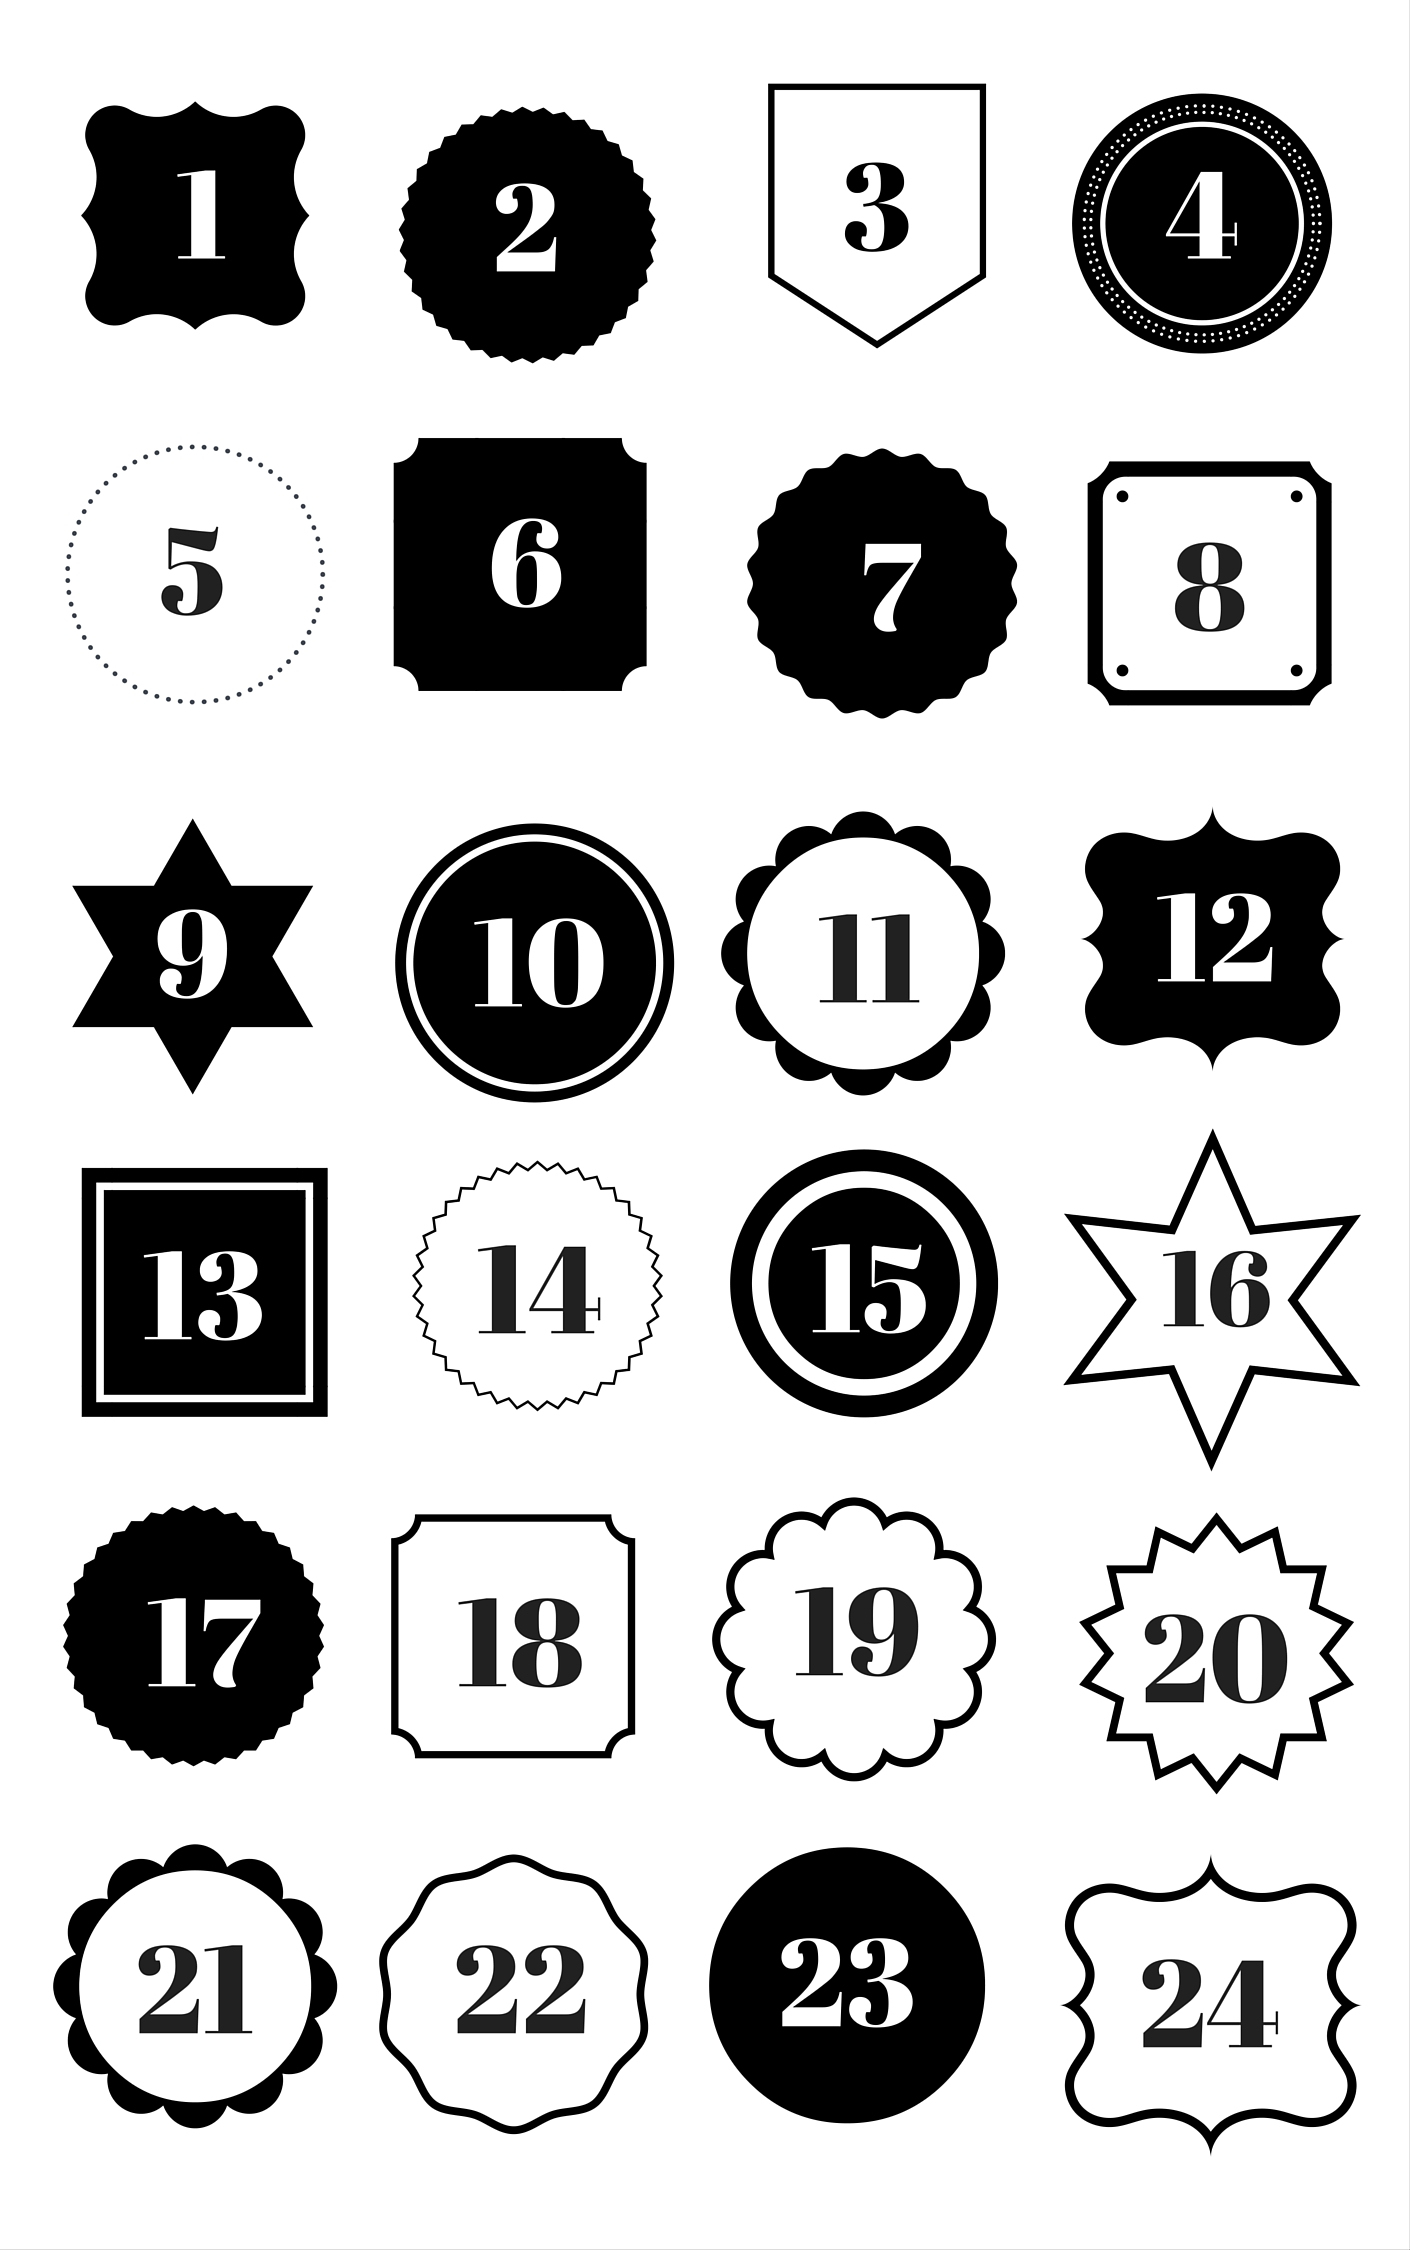 Adventskalender Zahlen Zum Ausdrucken verwandt mit Adventskalender Drucken